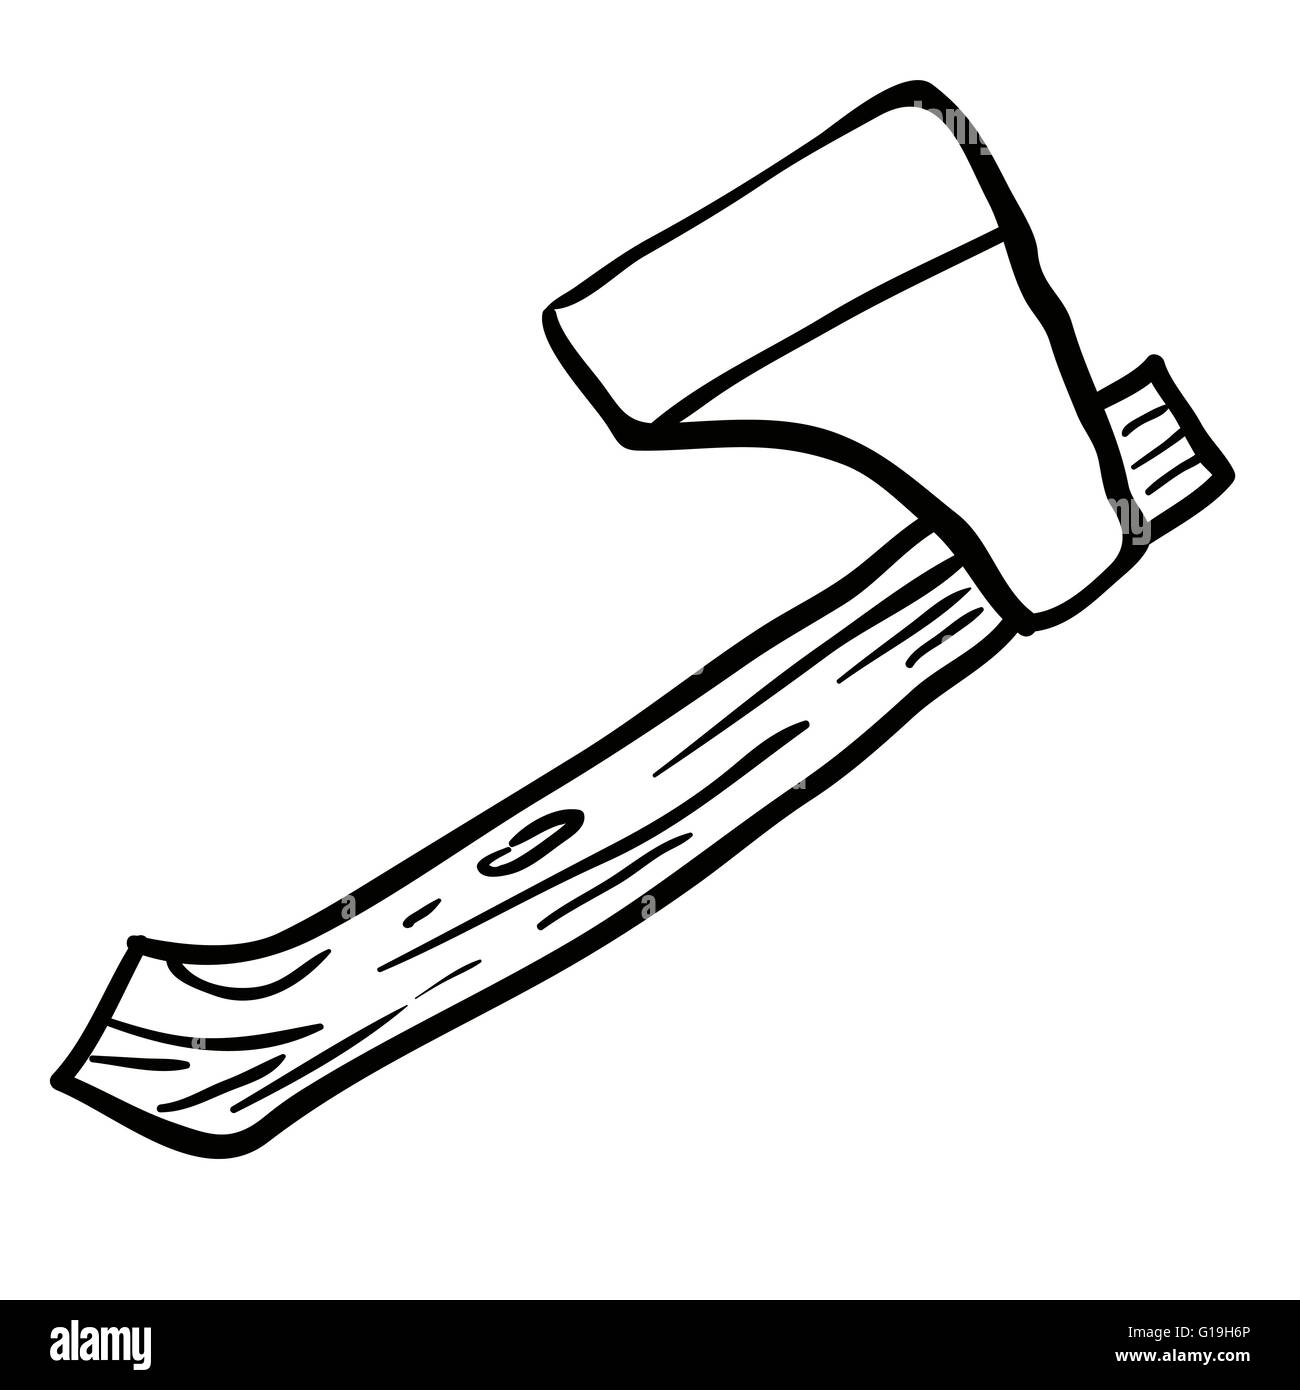 Gevoel van schuld regeren Echter black and white axe cartoon Stock Vector Image & Art - Alamy